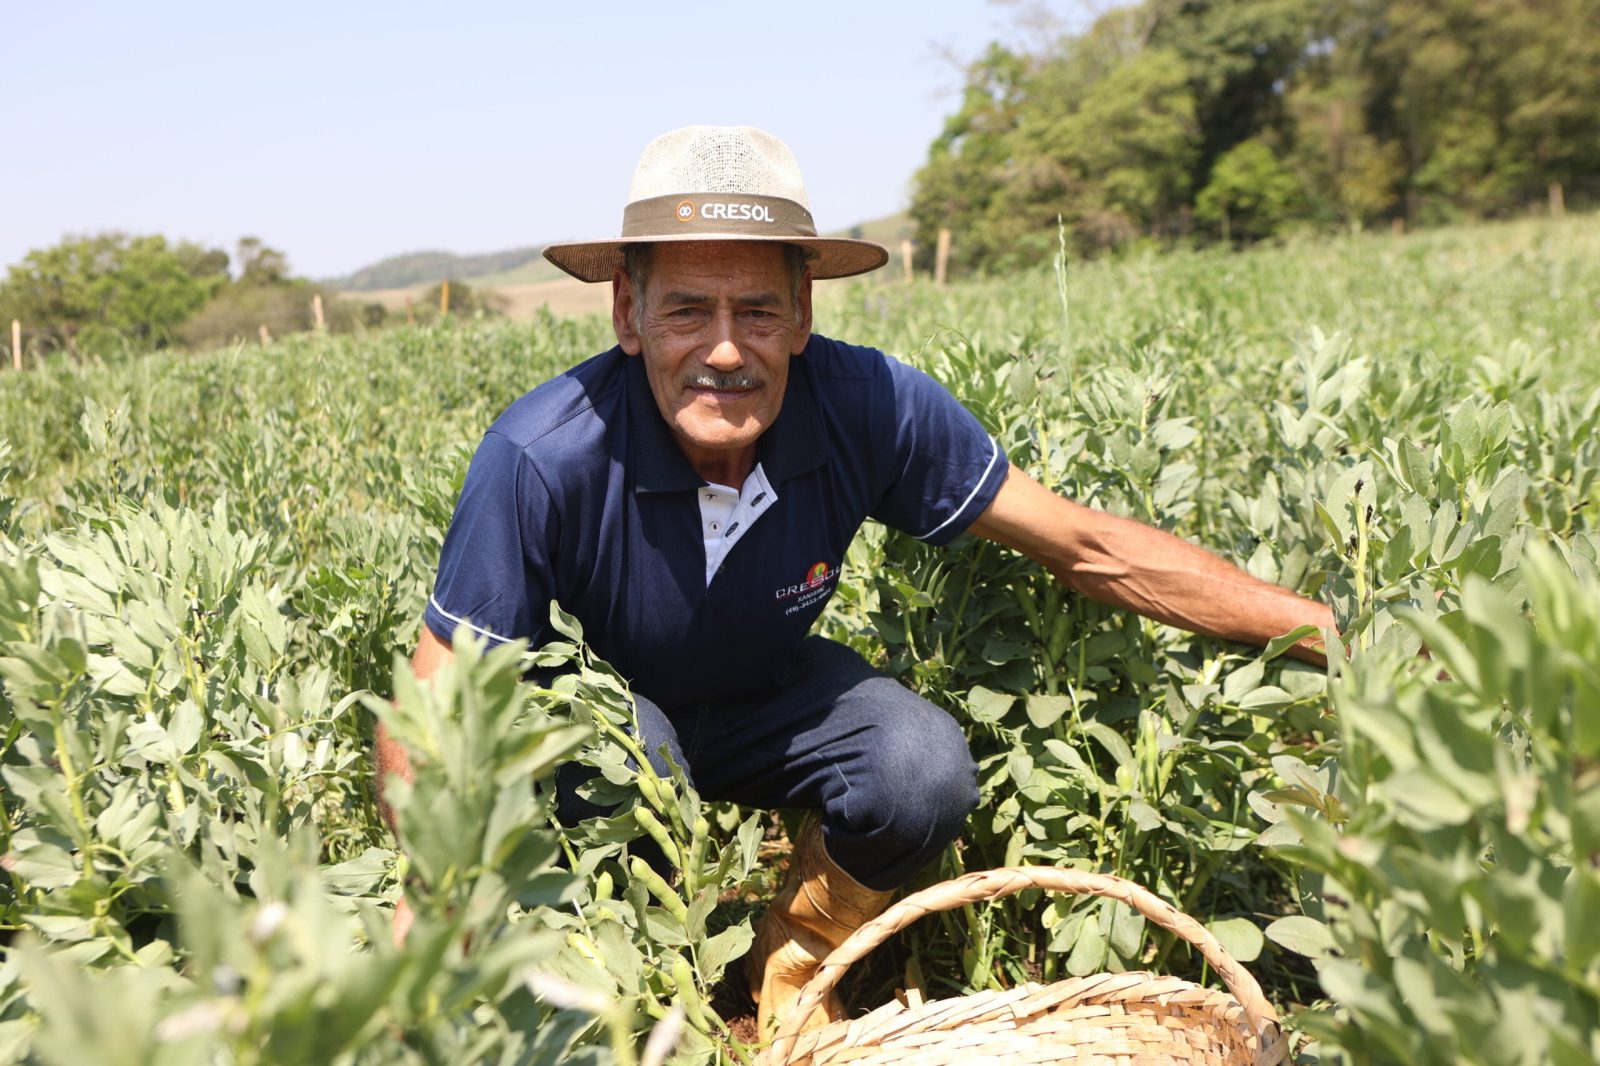 Linhas de créditos sustentáveis impulsionam pequenos agricultores e a preservação ambiental